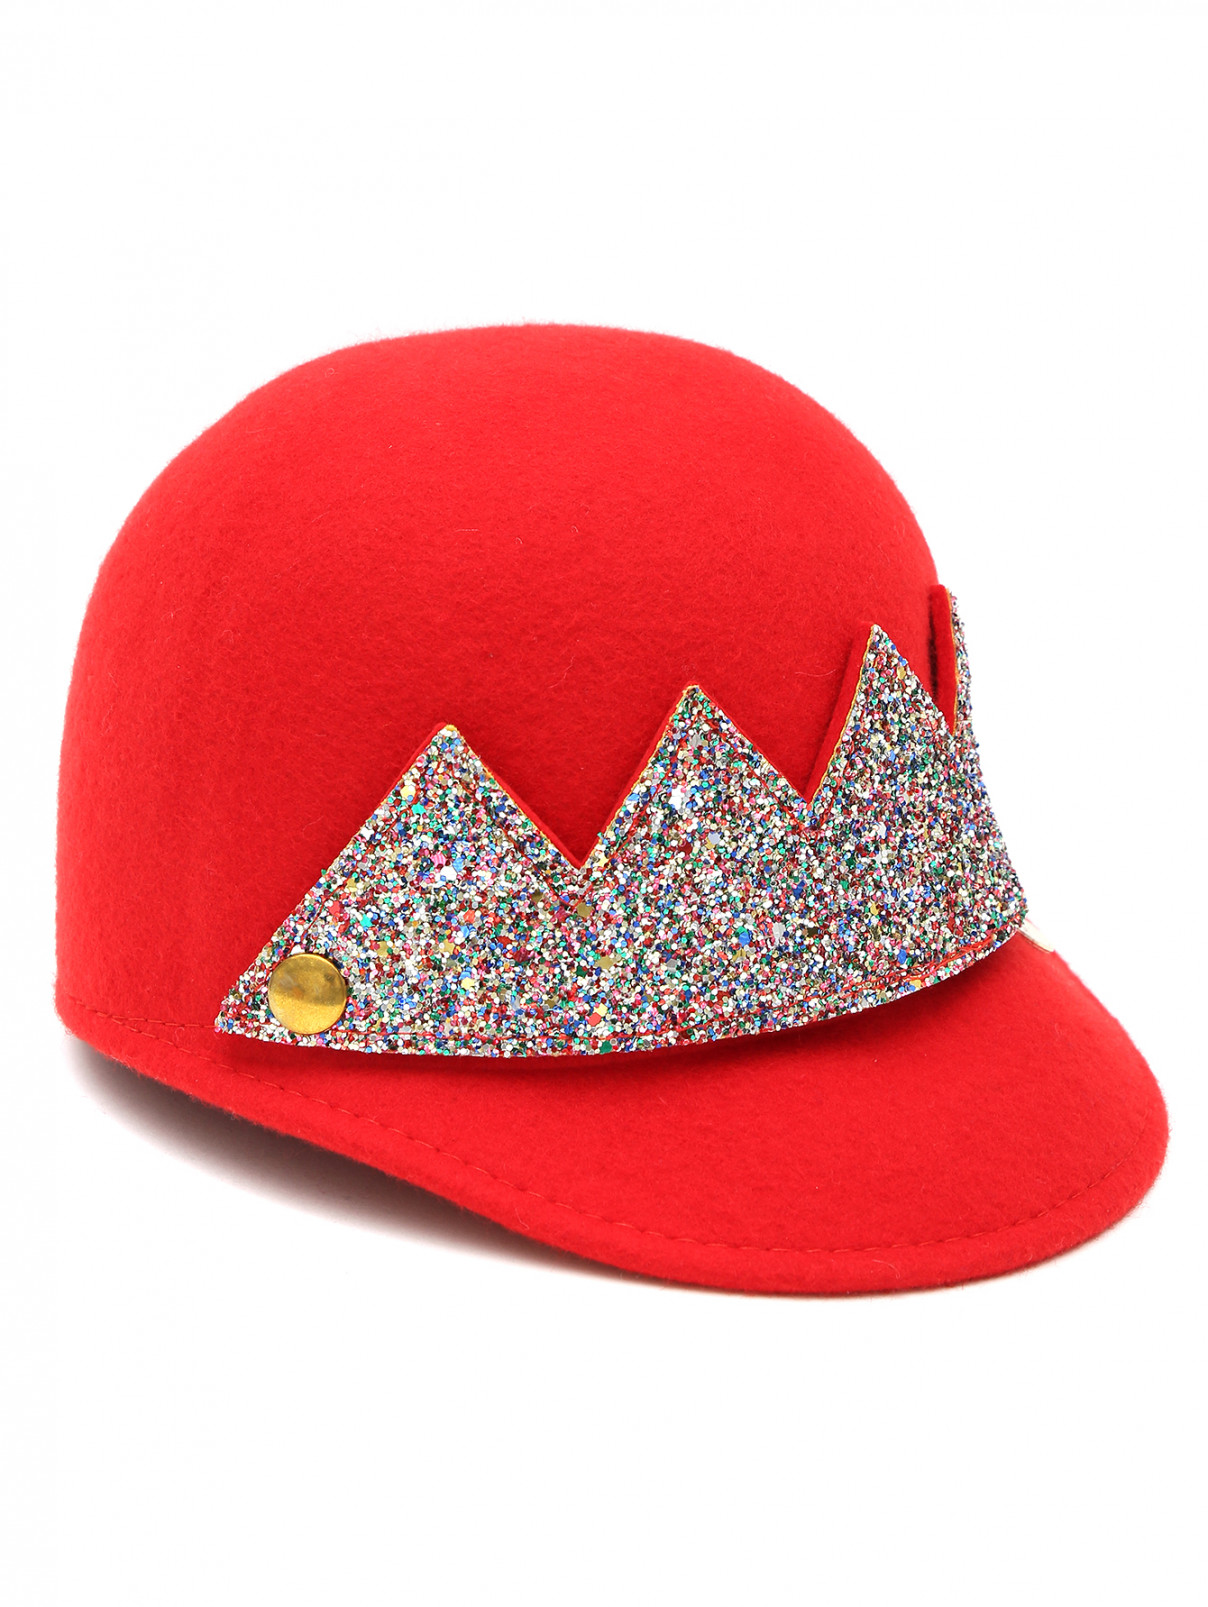 Шляпа фетровая с блестками Simonetta  –  Общий вид  – Цвет:  Красный